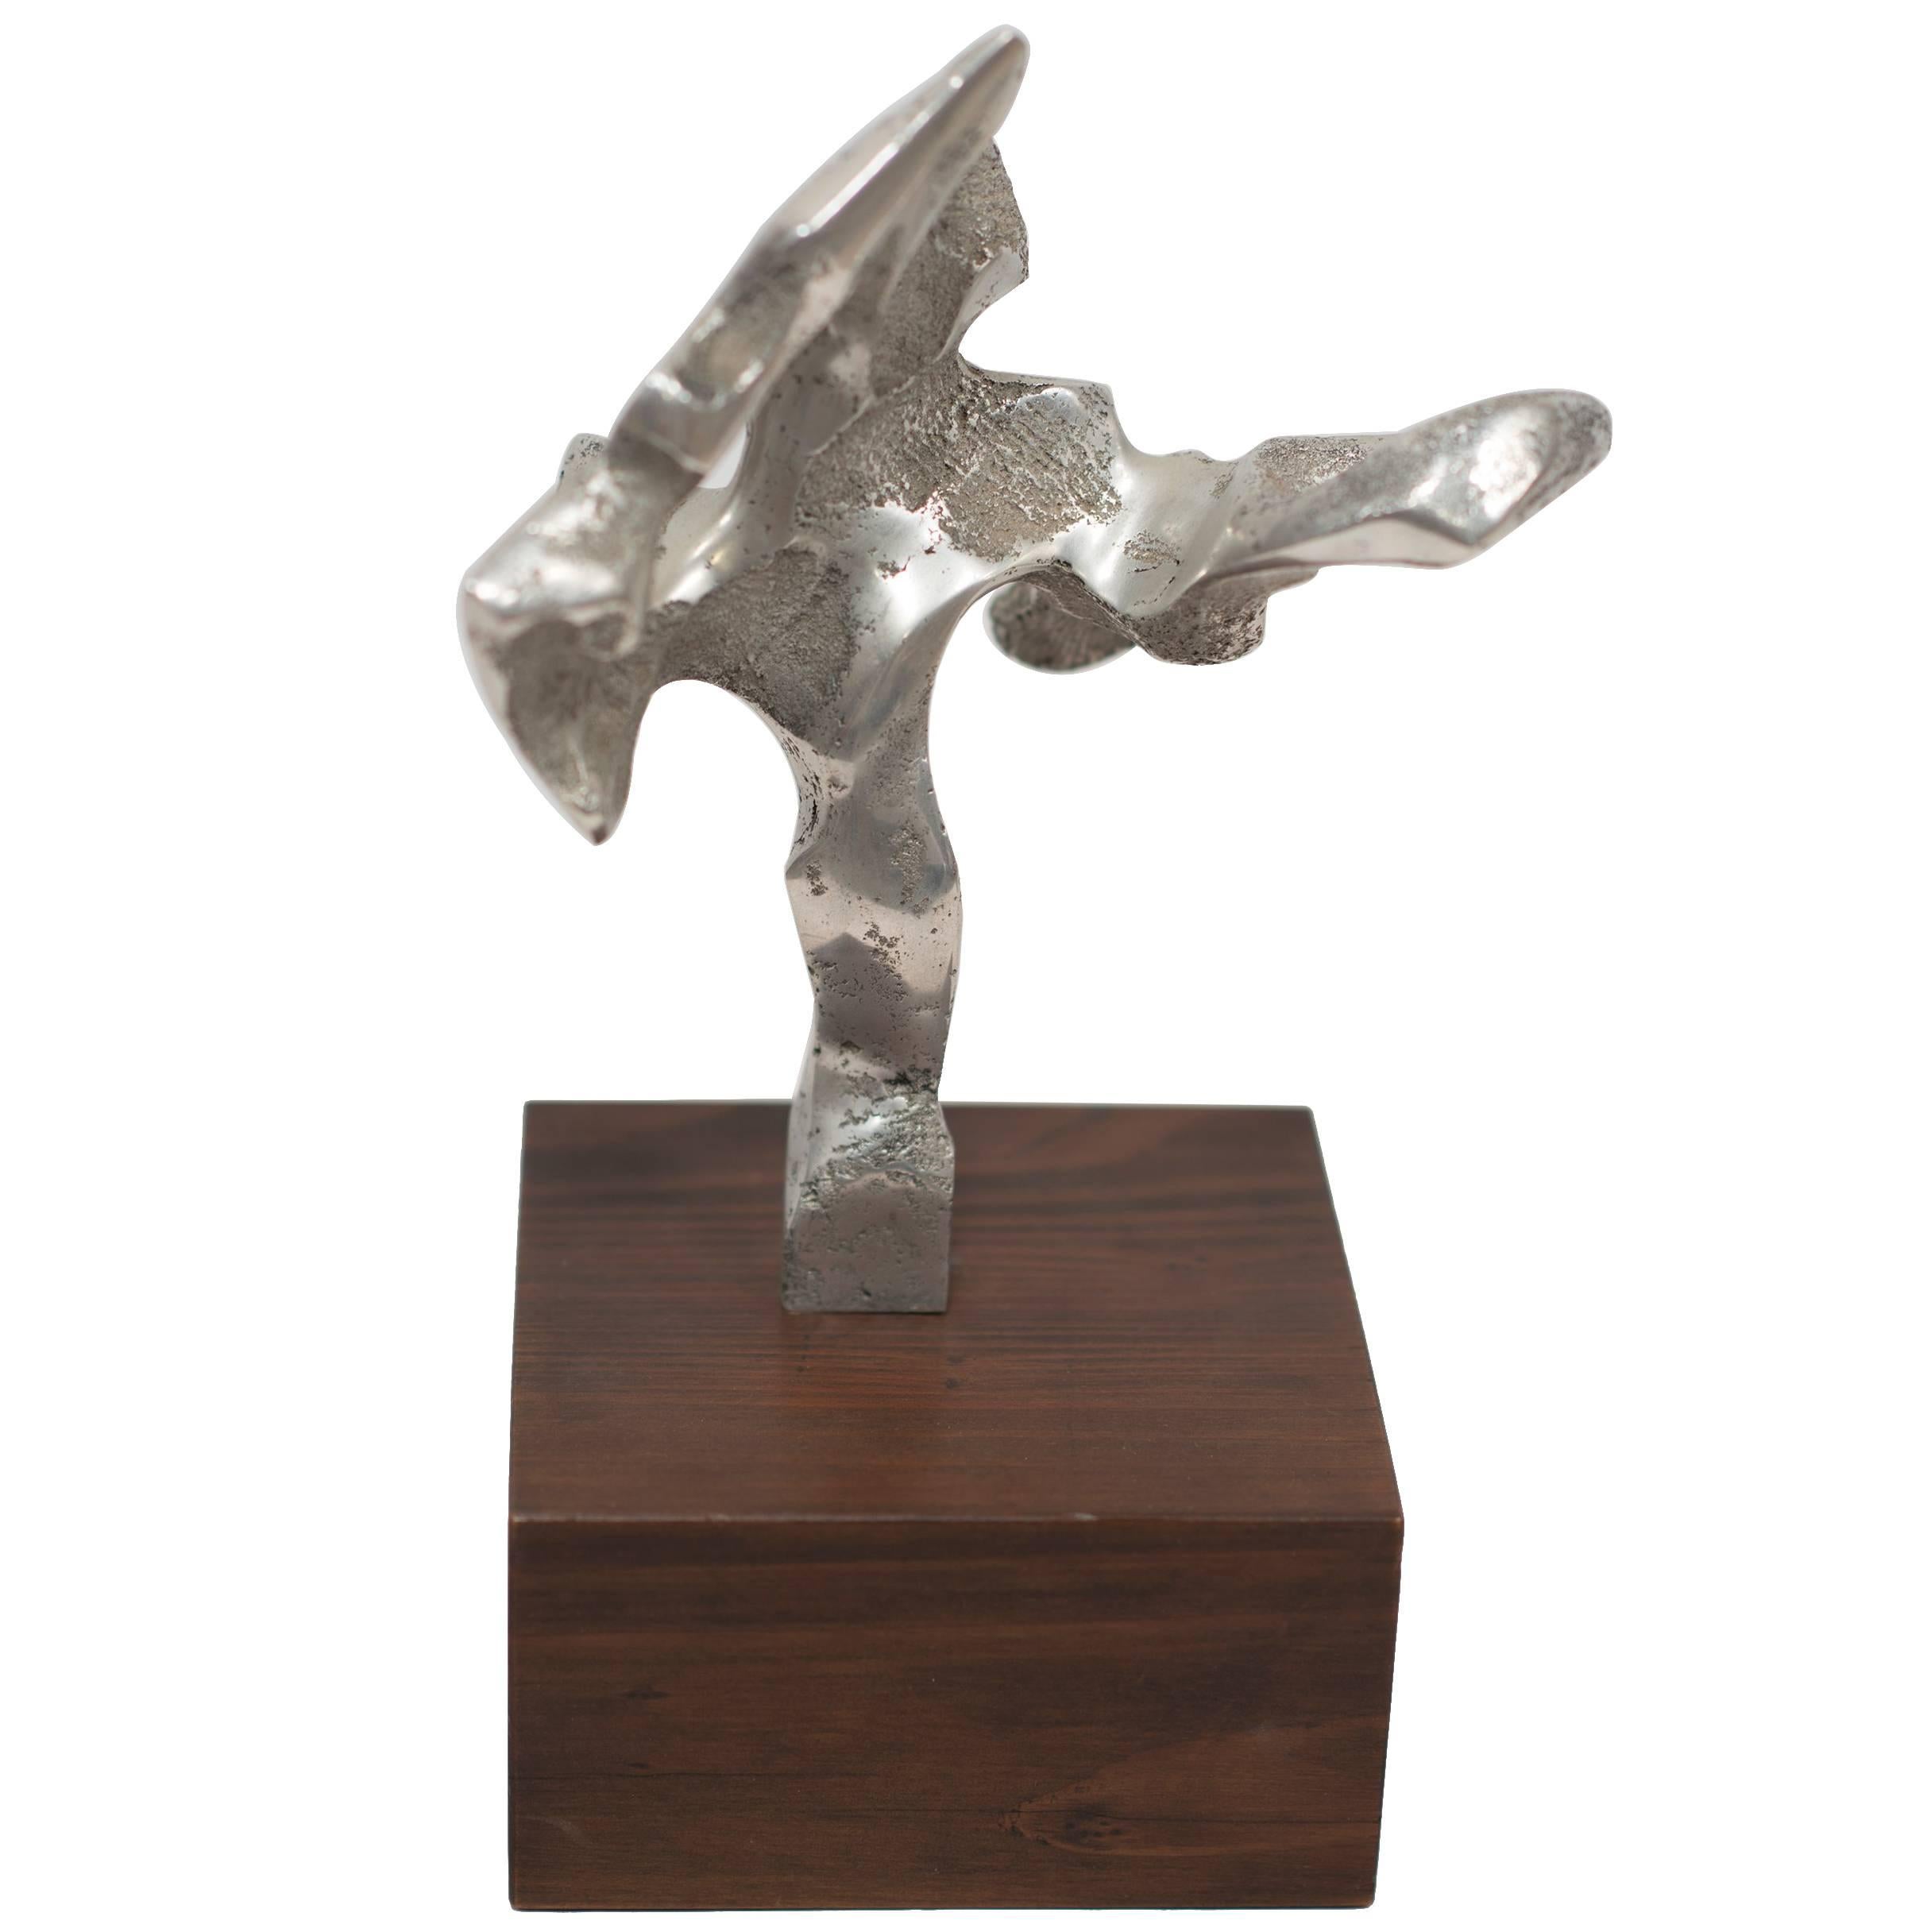 Eine detaillierte abstrakte Metallskulptur mit einem Holzsockel. Ein kleines Schmuckstück für den Tisch, das mit raffinierten Details und freien Formen aufwartet. Der Designer und/oder Künstler ist nicht bekannt, aber die Quelle dieses Stücks stammt